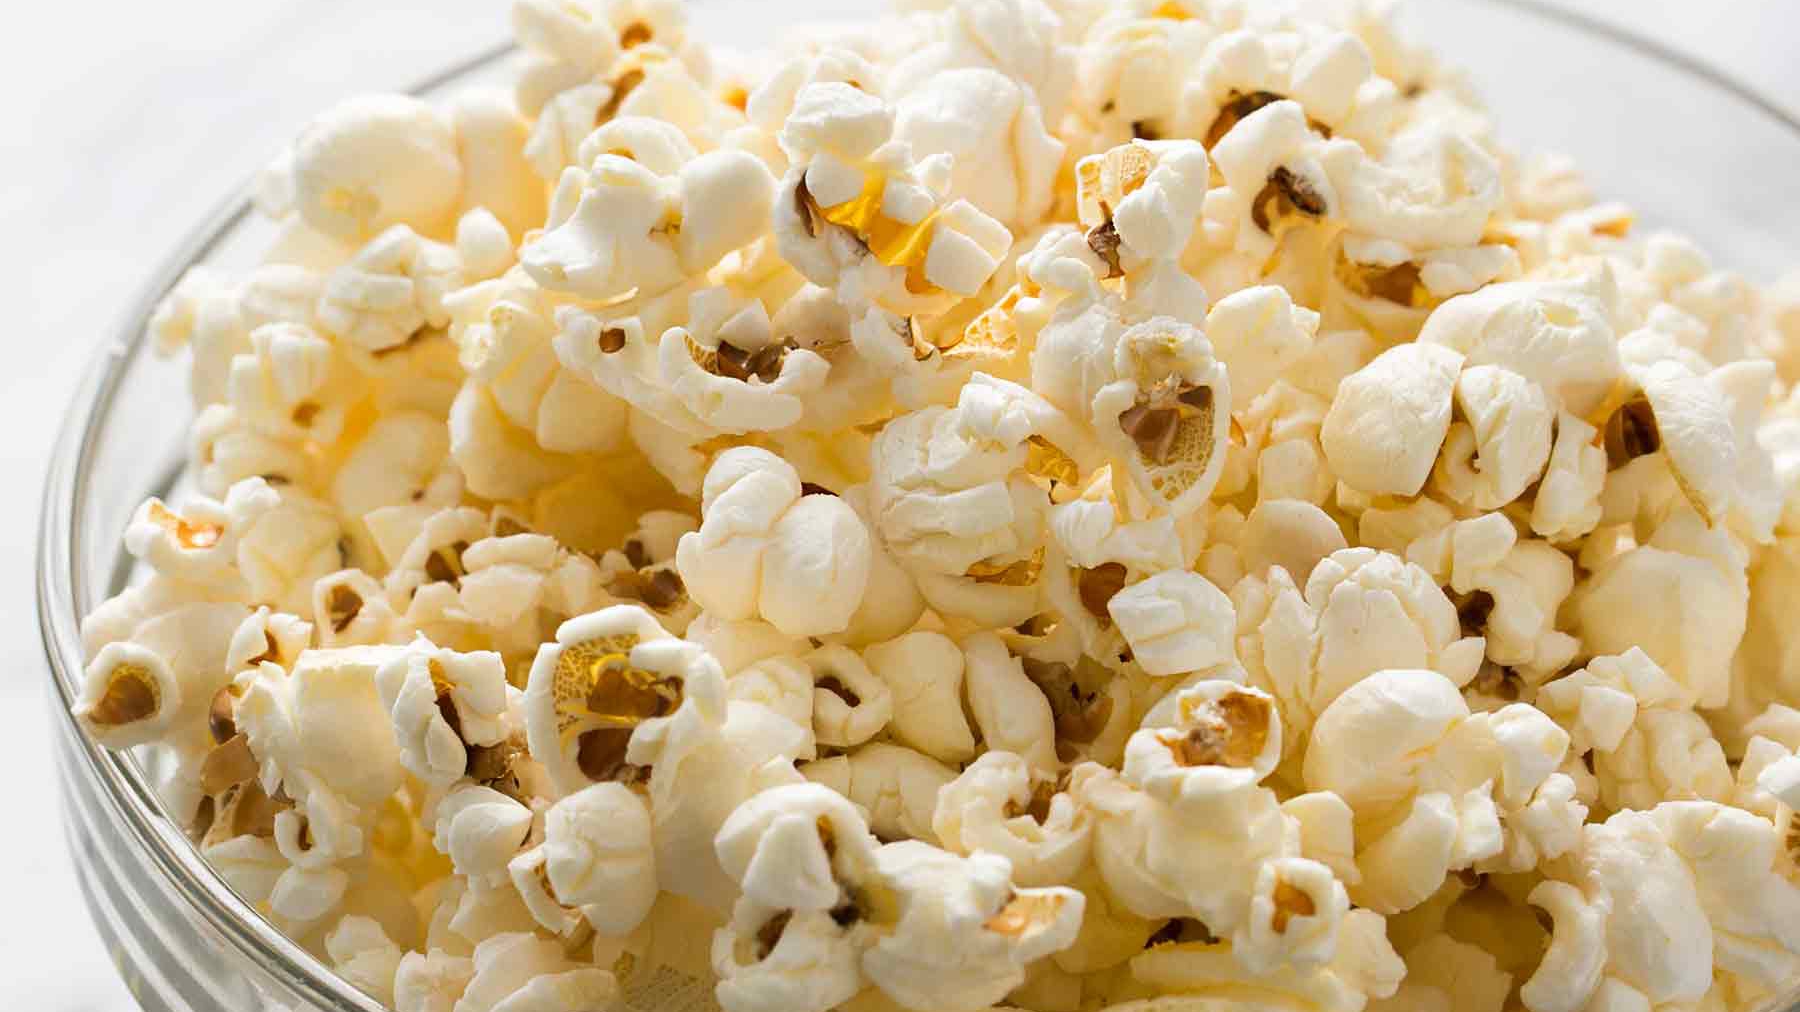 De ce explodează boabele de porumb atunci când se transformă în popcorn – Explicația științifică a fenomenului